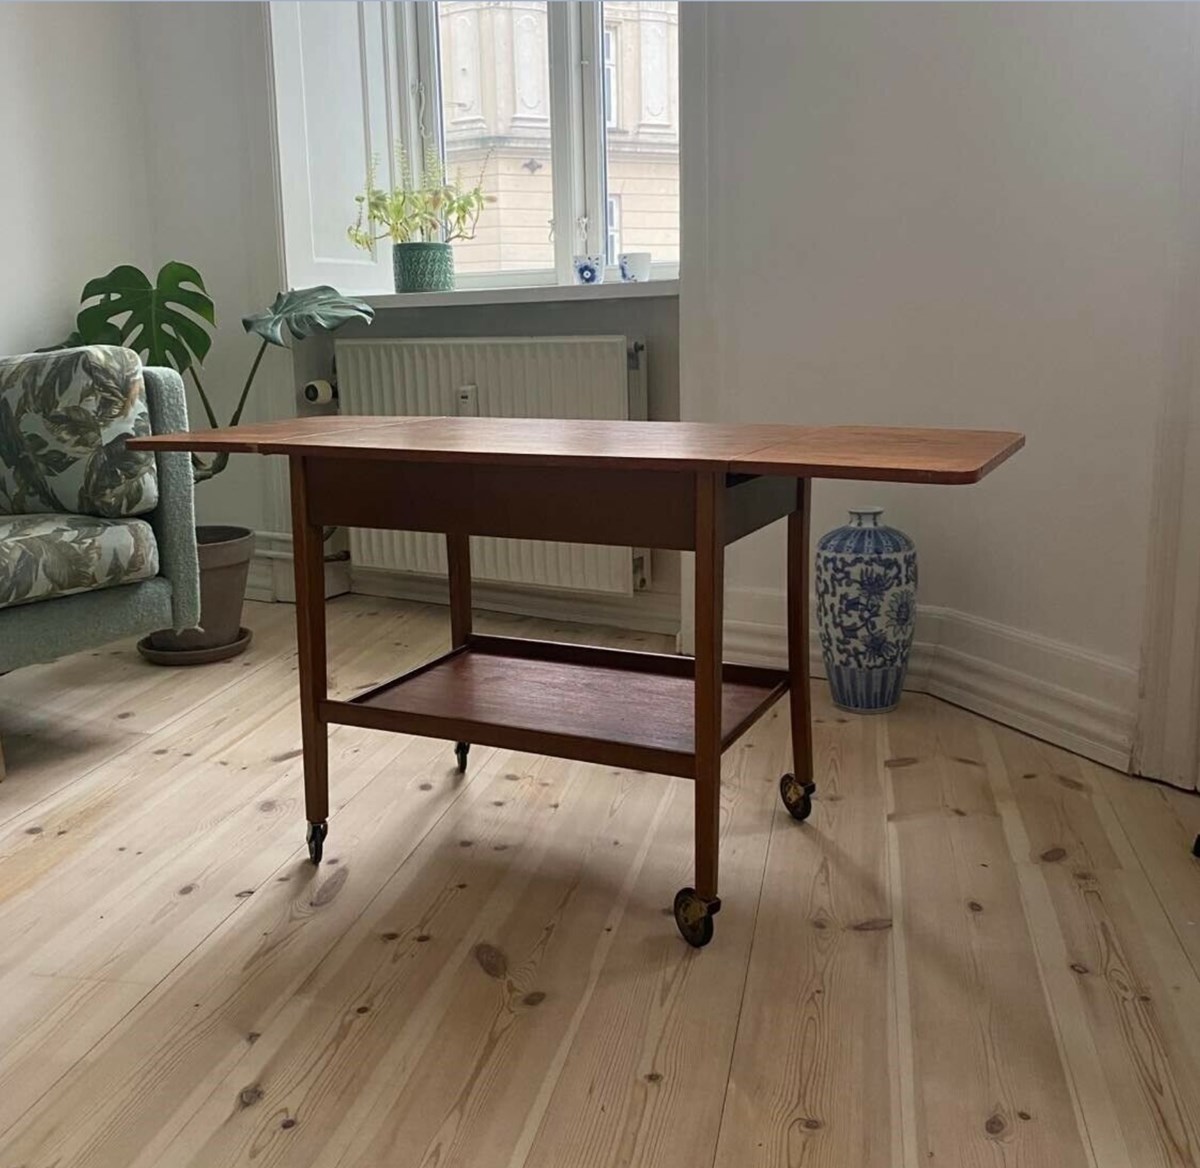 600 kroner håber Nina i København N at få for dette sofabord i teaktræ. ’Sælges grundet flytning. Står på 1. sal, vejer ikke meget’, skriver hun i annoncen.